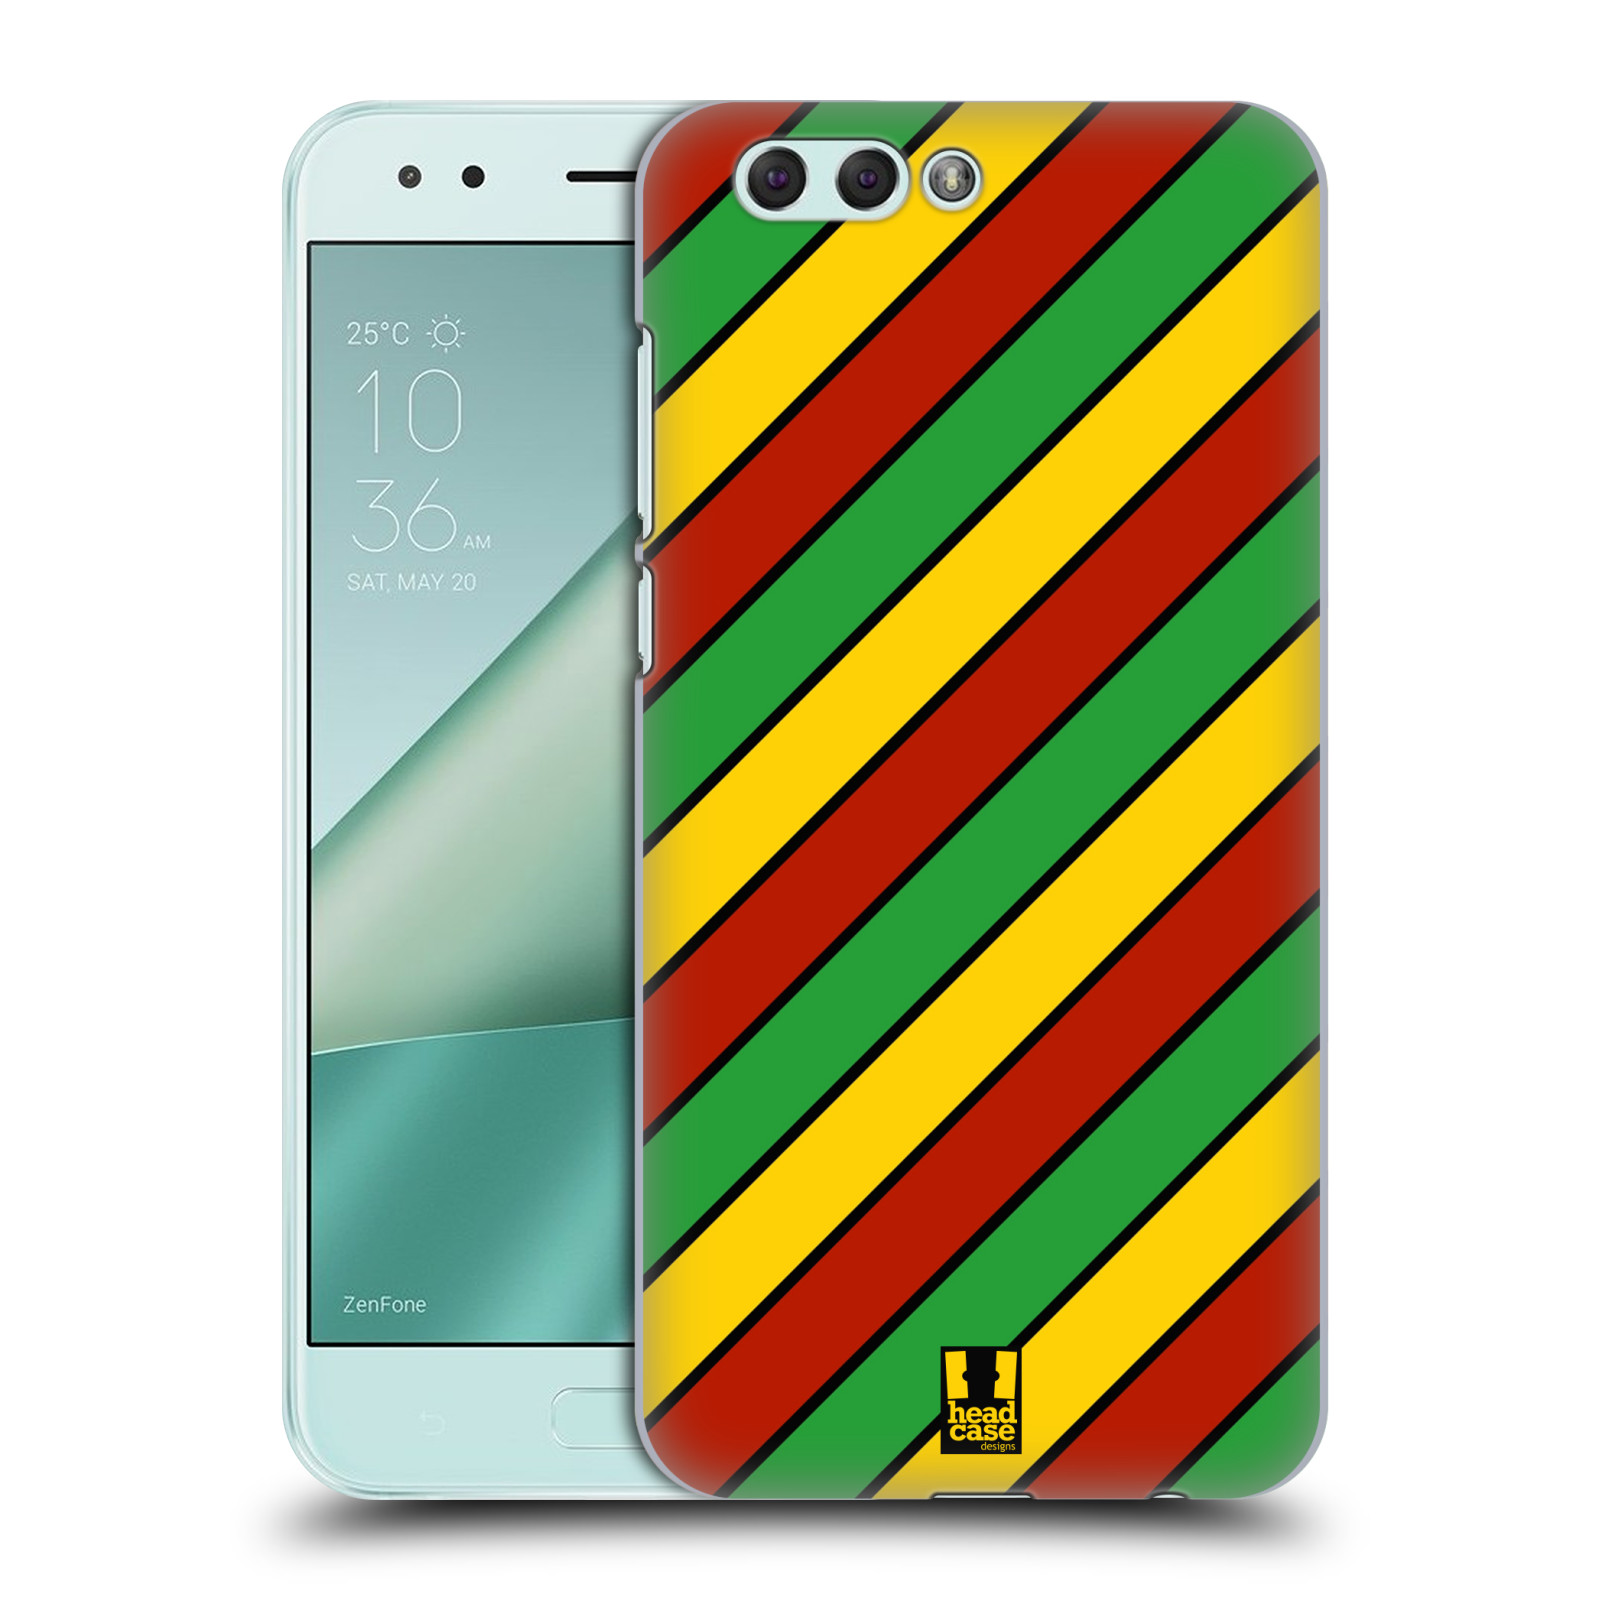 HEAD CASE plastový obal na mobil Asus Zenfone 4 ZE554KL vzor Rasta barevné vzory PRUHY